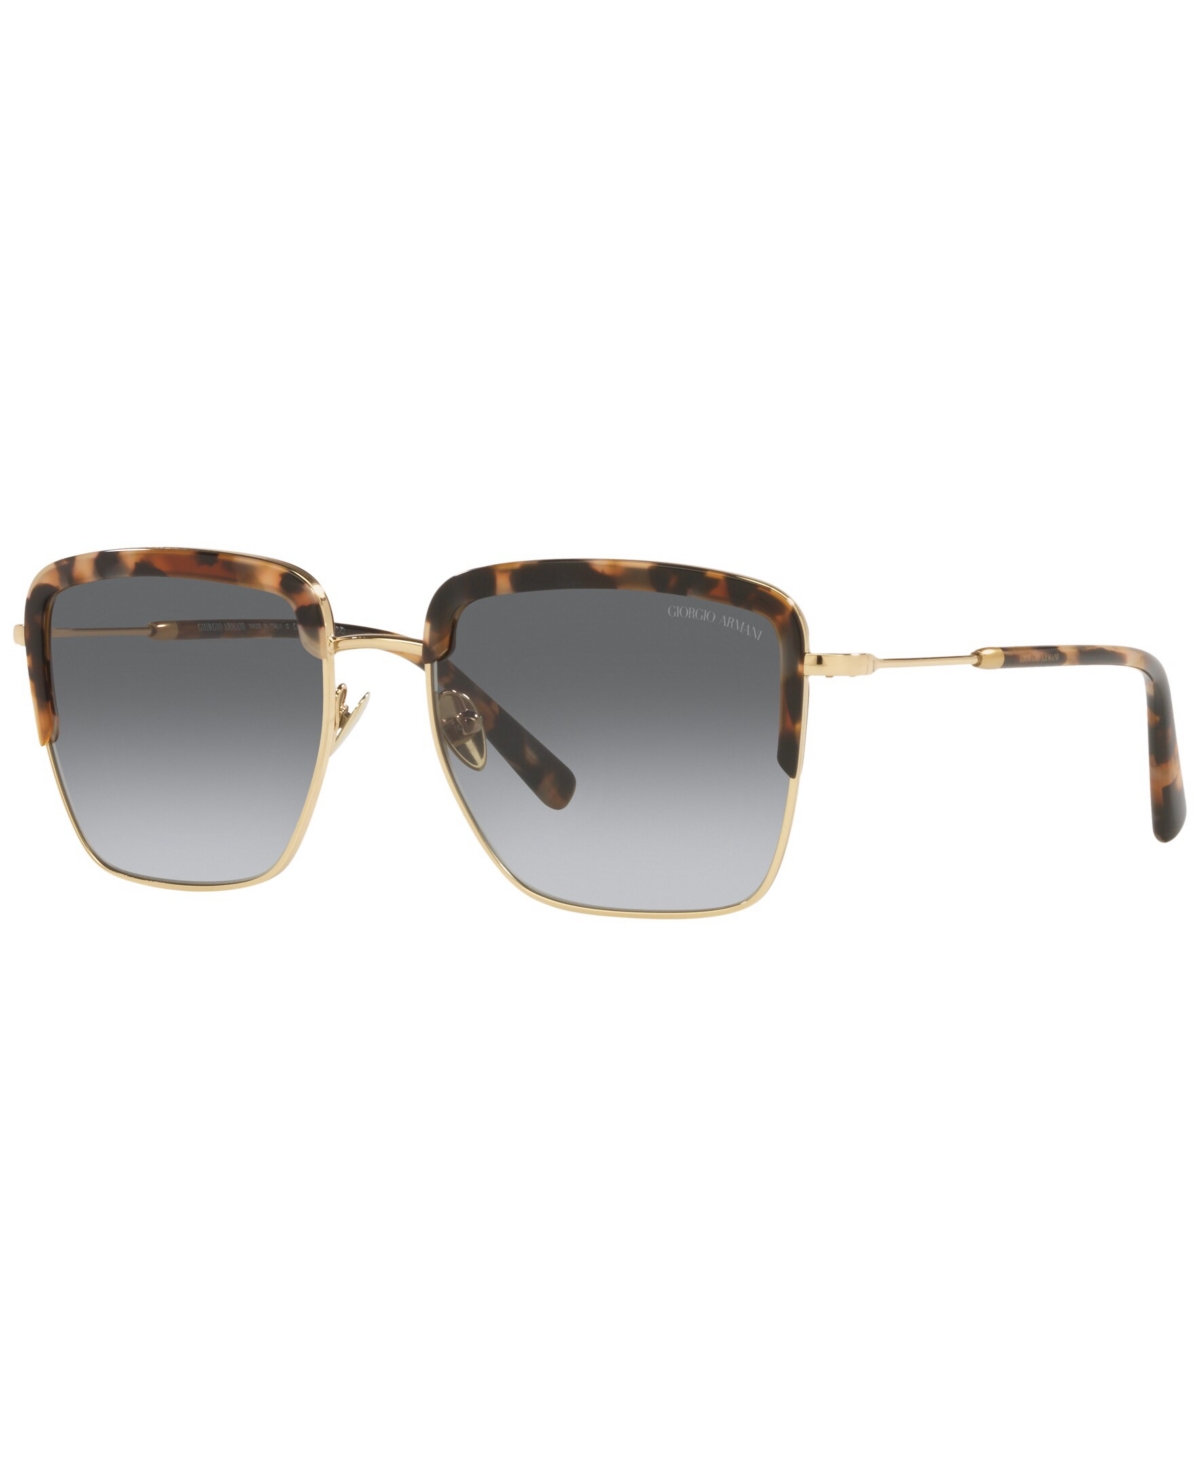 Giorgio Armani Women's Sunglasses, Ar6126 In Pale Gold-tone,brown Tortoise